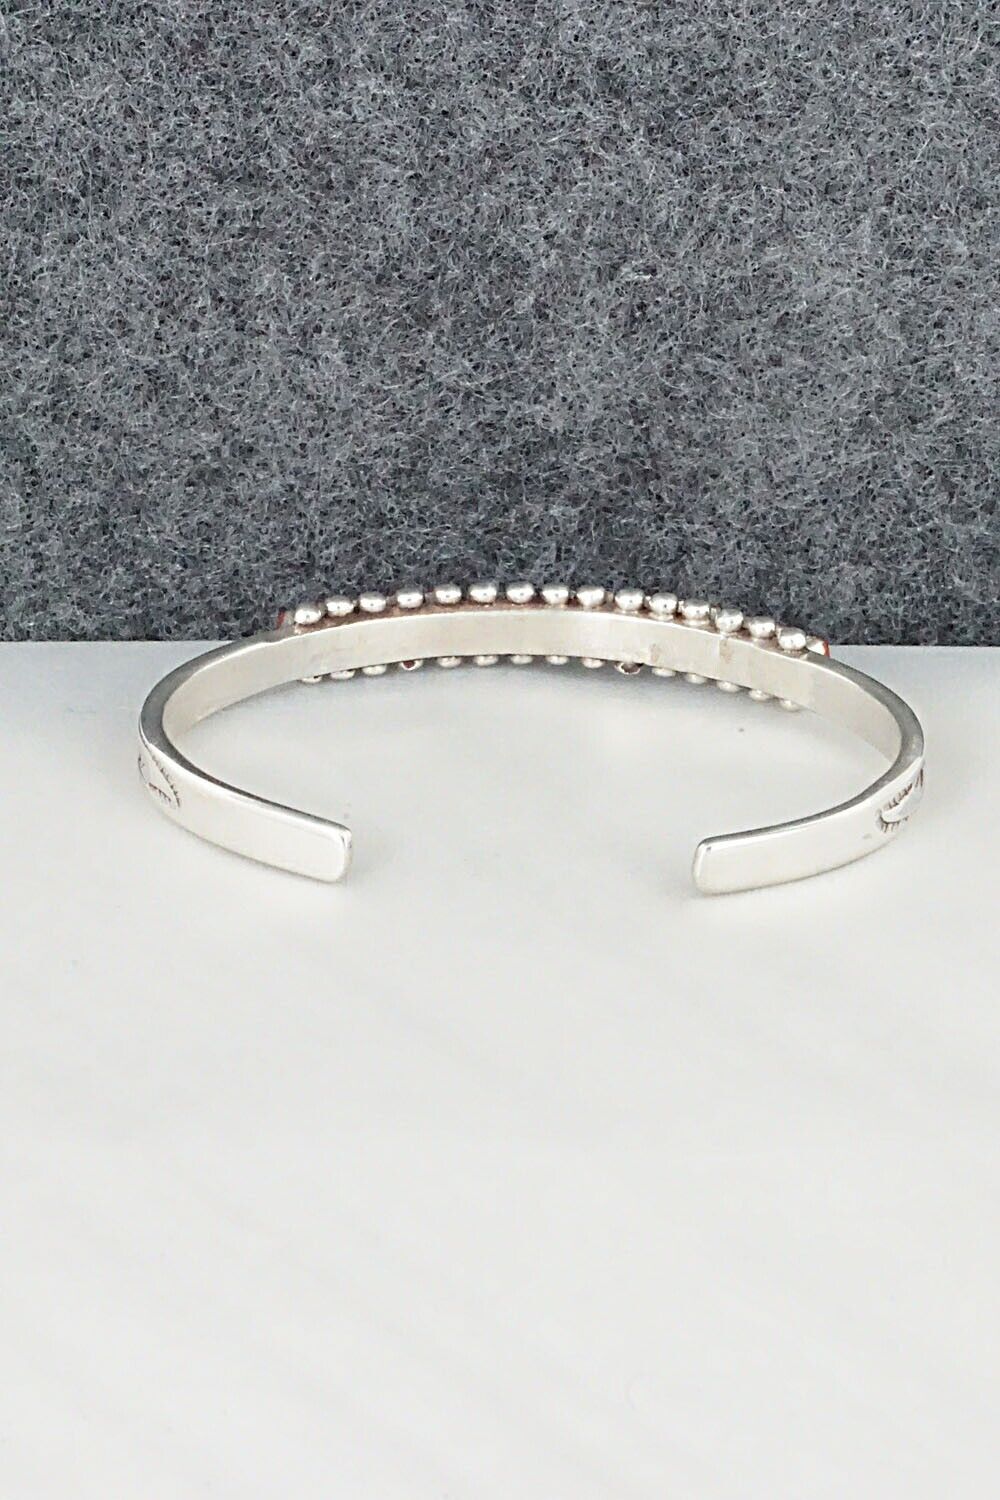 Coral & Sterling Silver Bracelet - Irma Unkestine